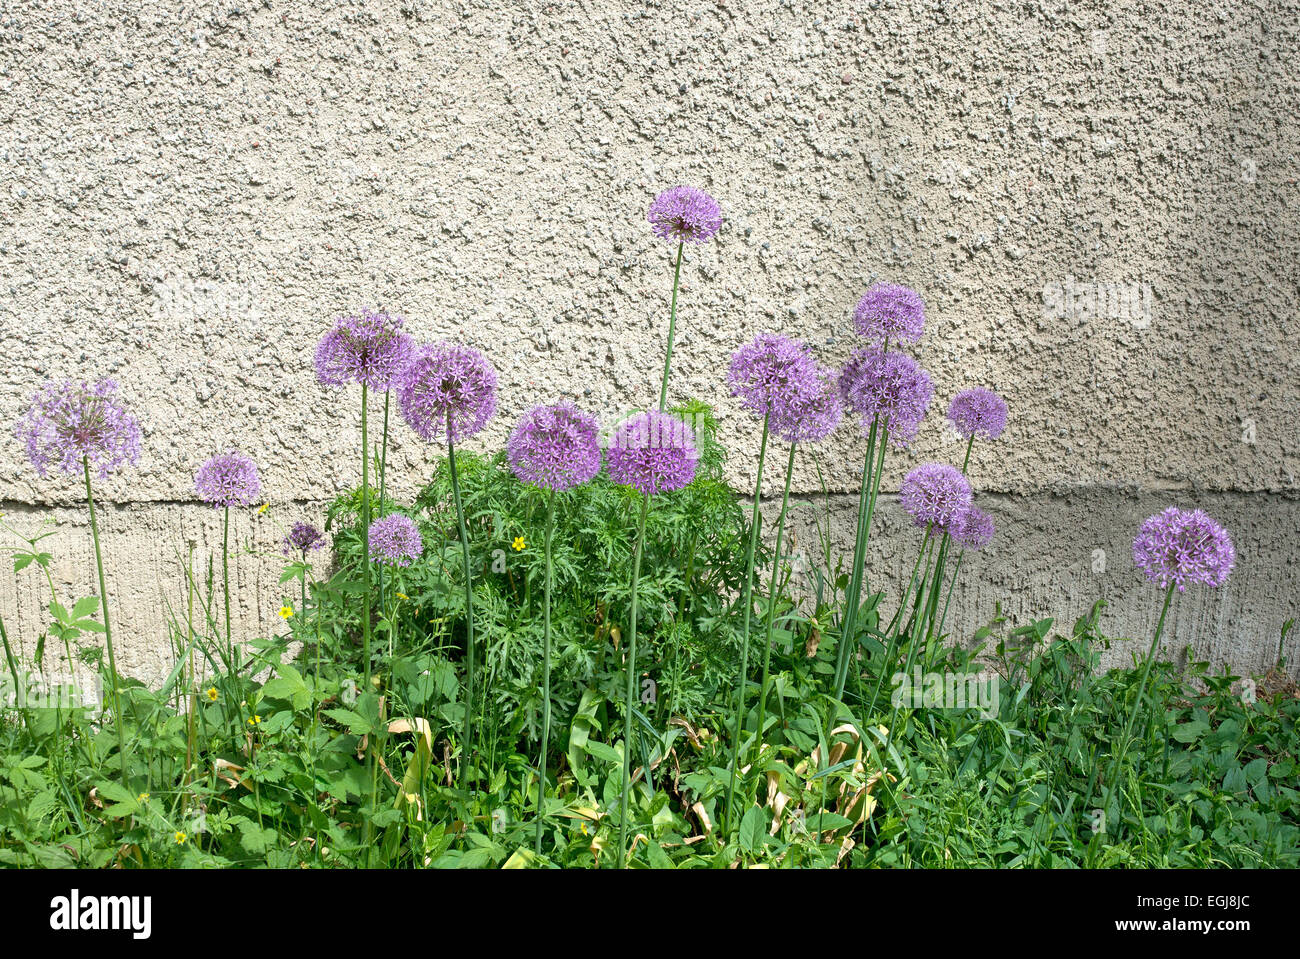 Allium Blumen mit lila Ball wie Blüten an einem Putz Wand, abstrakte Komposition. Stockfoto